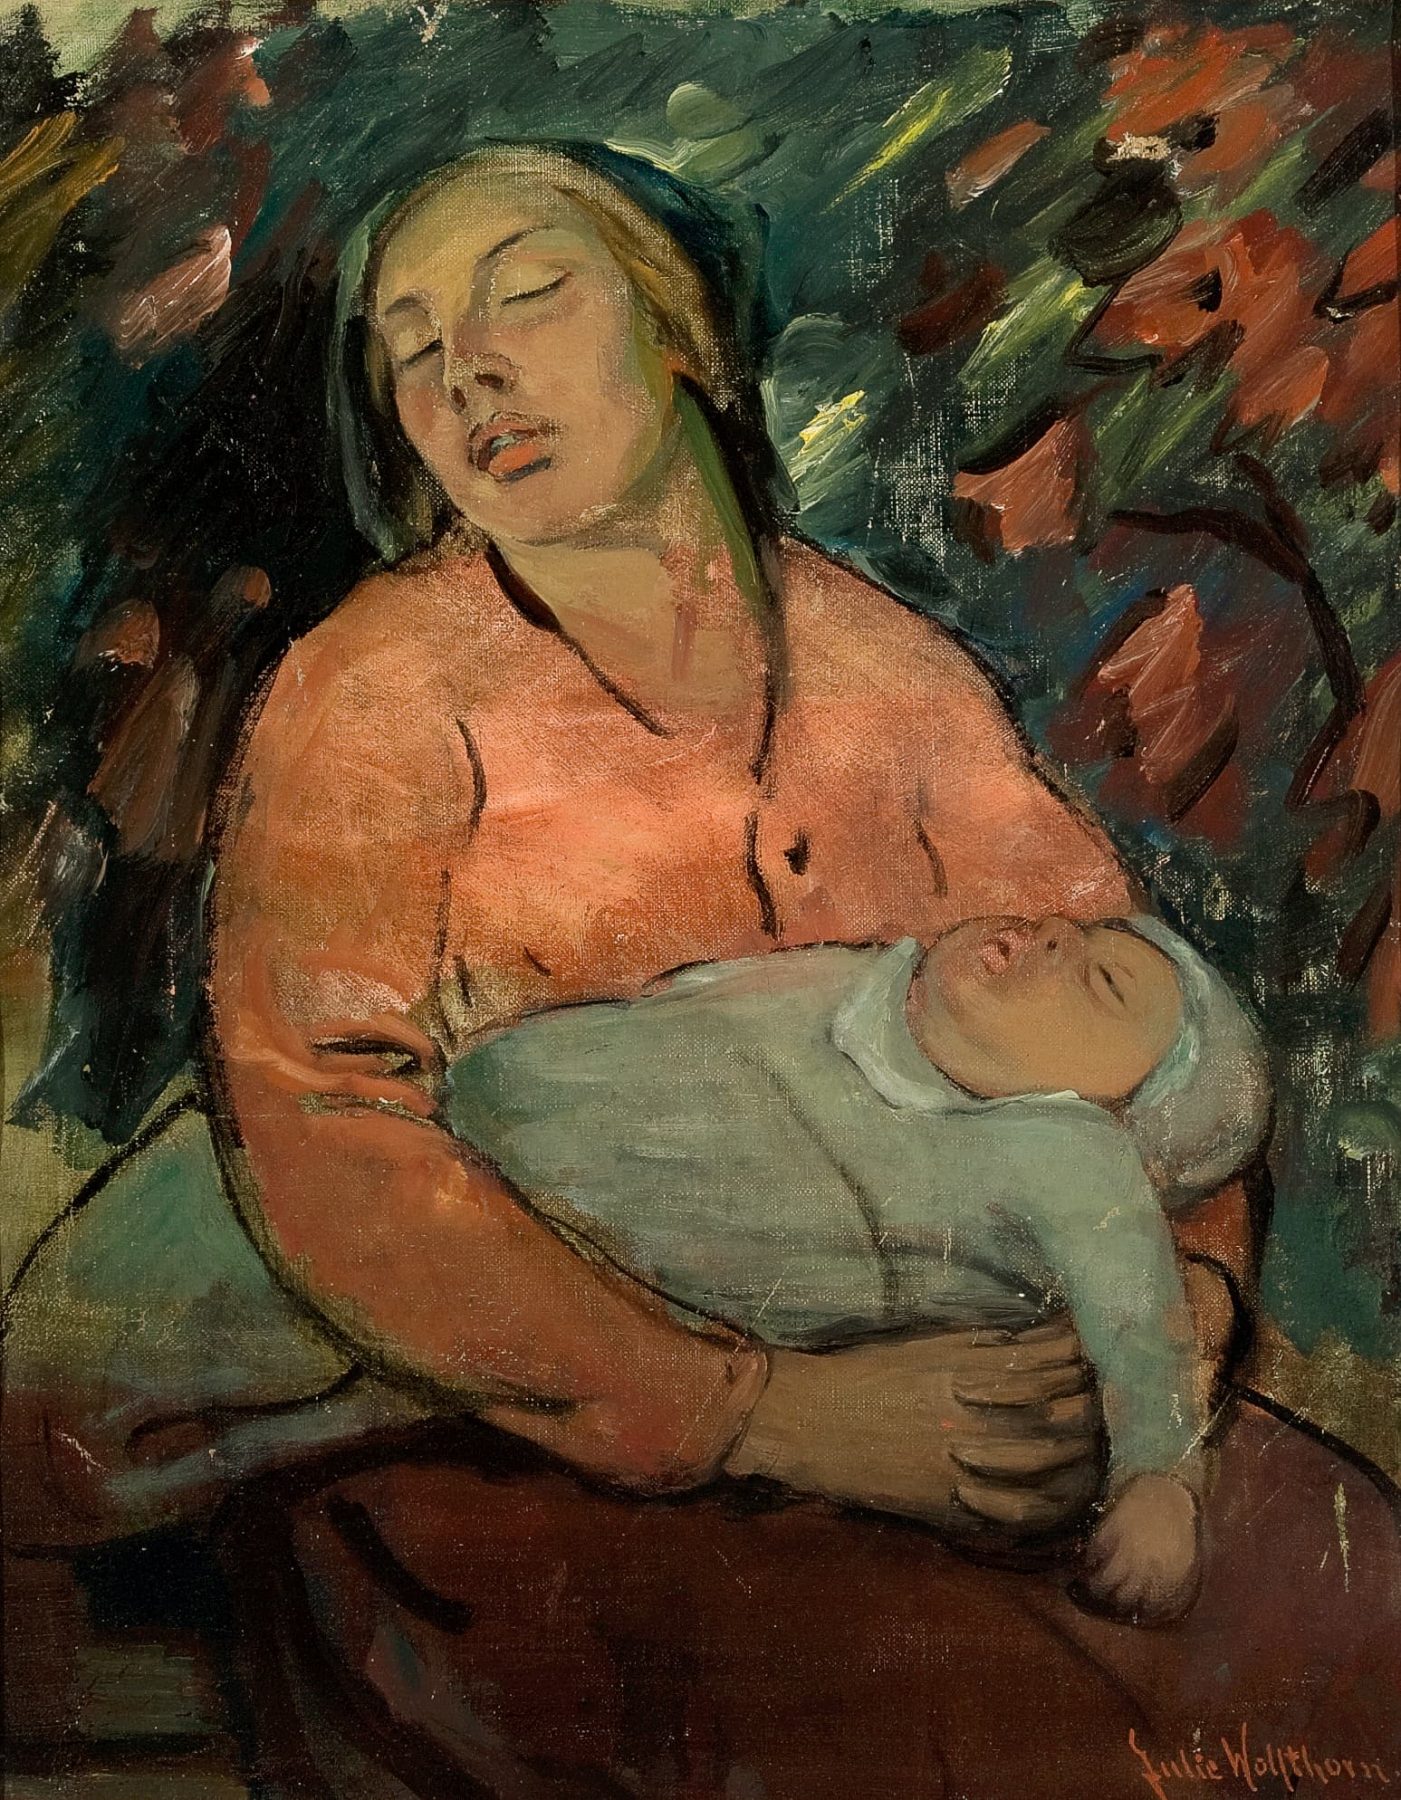 Gemälde mit einer schlafenden Frau, die auf ihrem Schoß in ihren Armen ein schlafendes Baby hält.